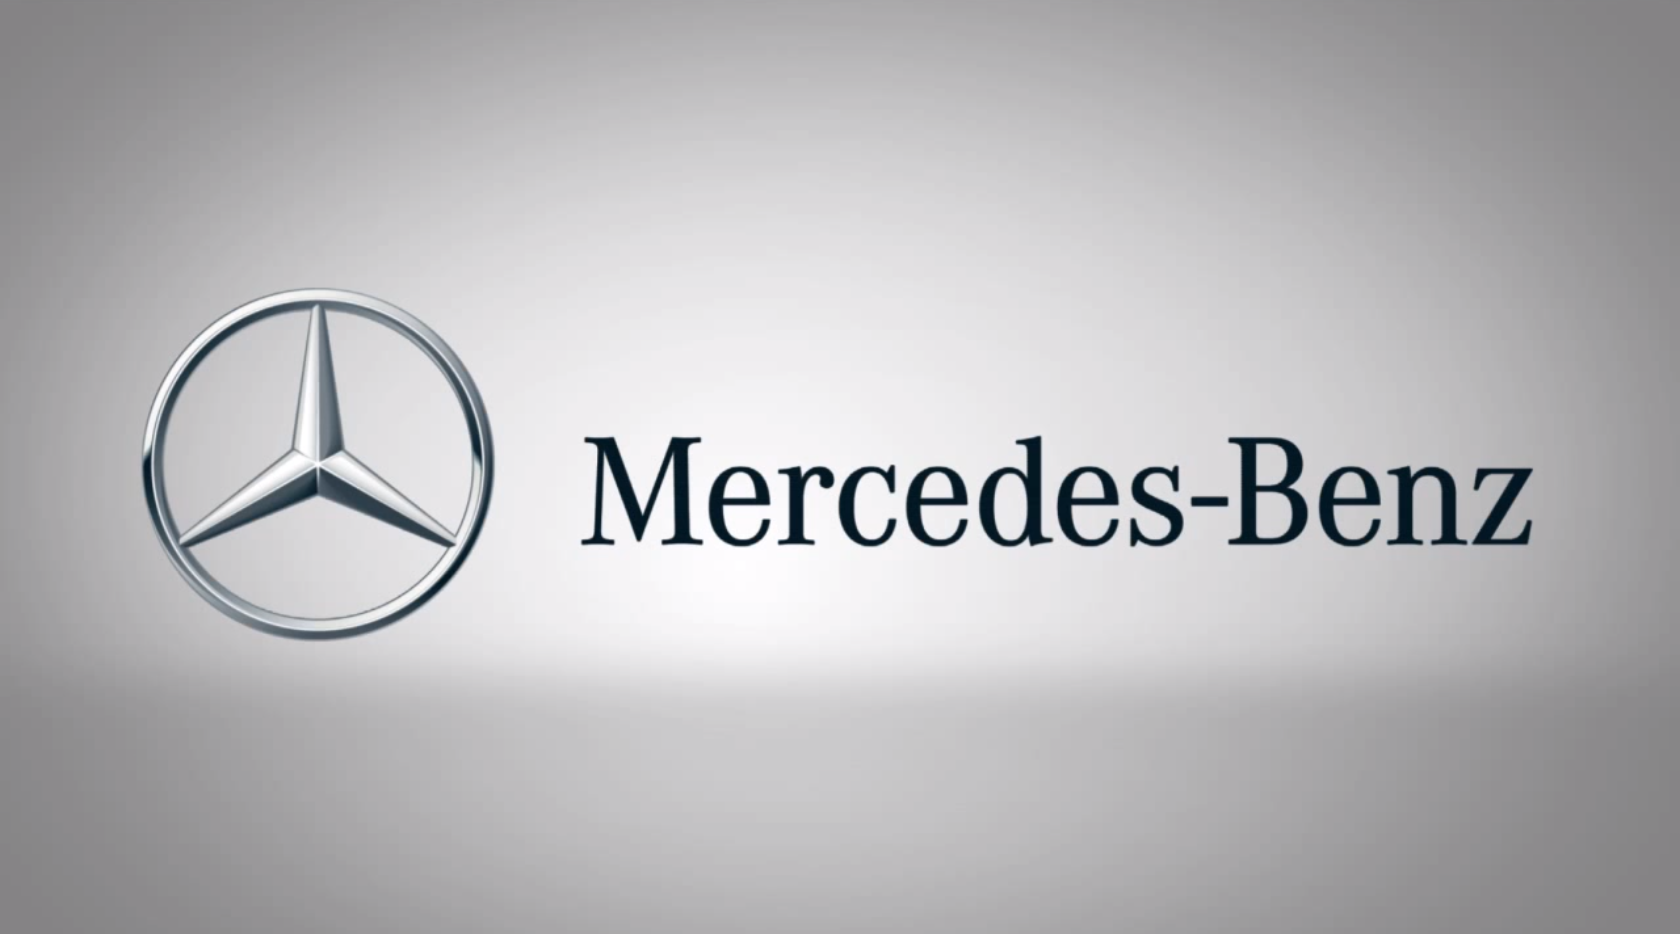 Скопировать мерседес. Daimler AG Mercedes-Benz. Мерседес- Бенц/ Mercedes-Benz лого. Мерседес Даймлер Бенц. Mercedes Benz Daimler logo.